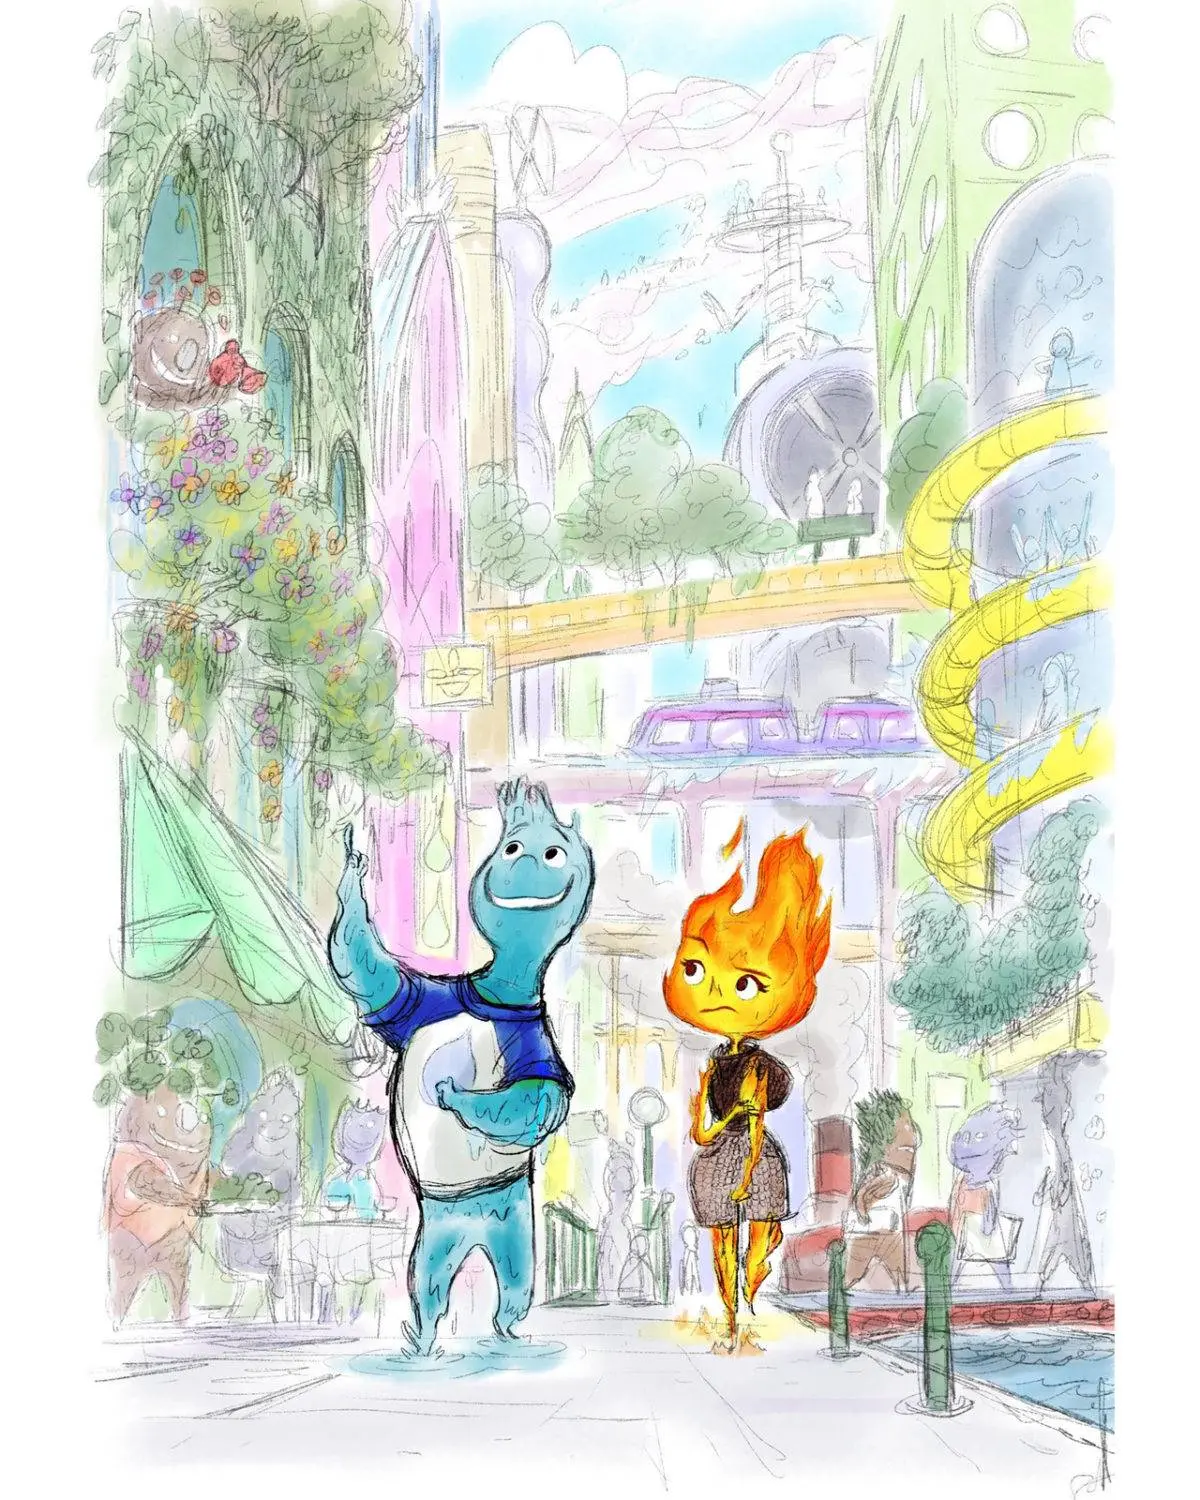 Revelan primera imagen de “Elemental” la nueva película de Disney y Pixar